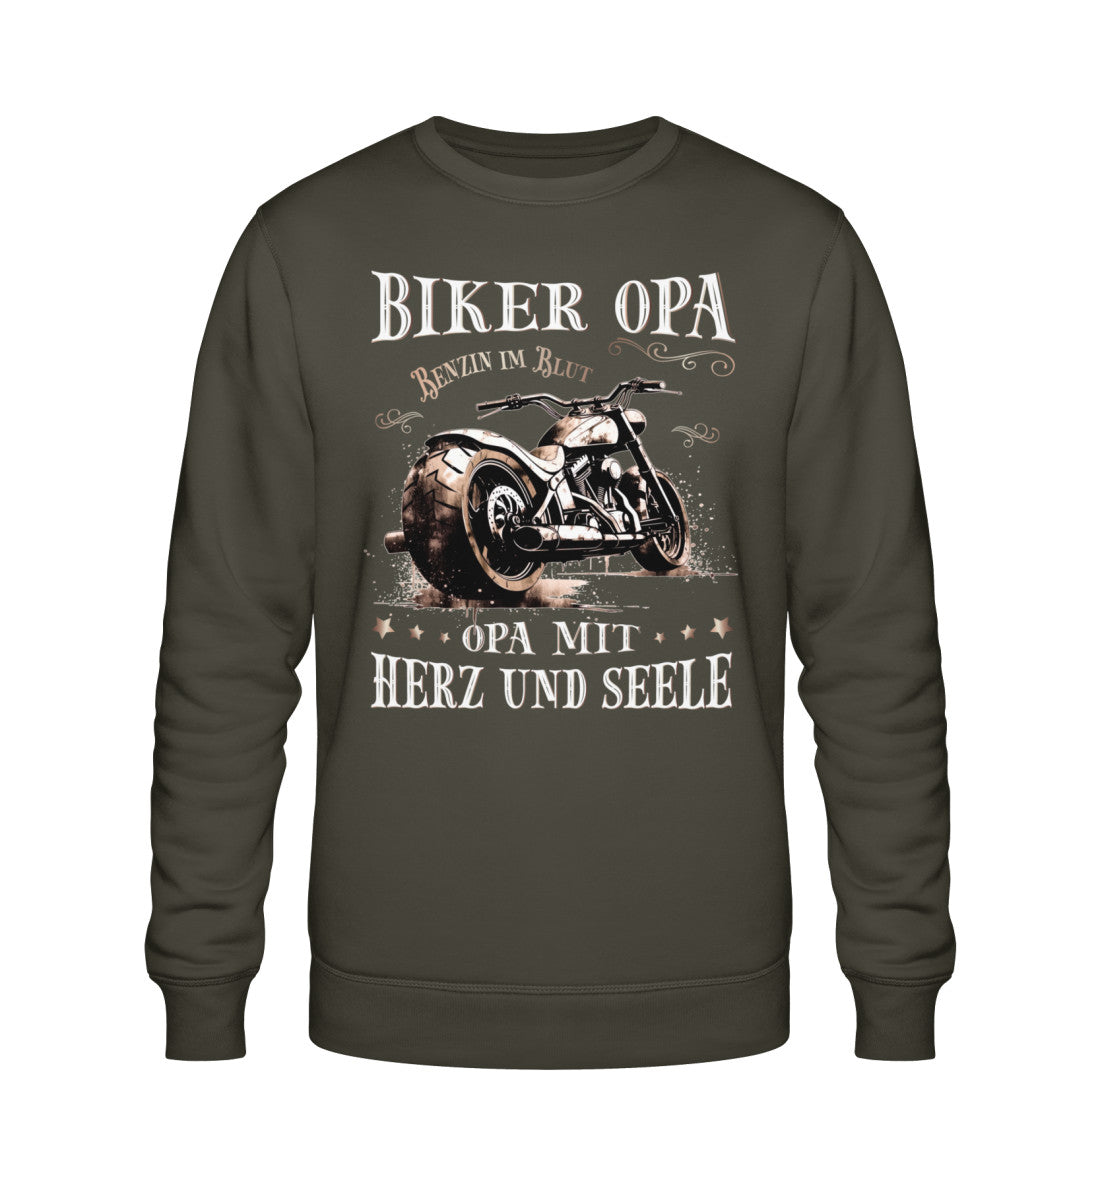 Ein Biker Sweatshirt für Motorradfahrer von Wingbikers mit dem Aufdruck, Biker Opa - Benzin im Blut - Opa mit Herz und Seele, in khaki grün.